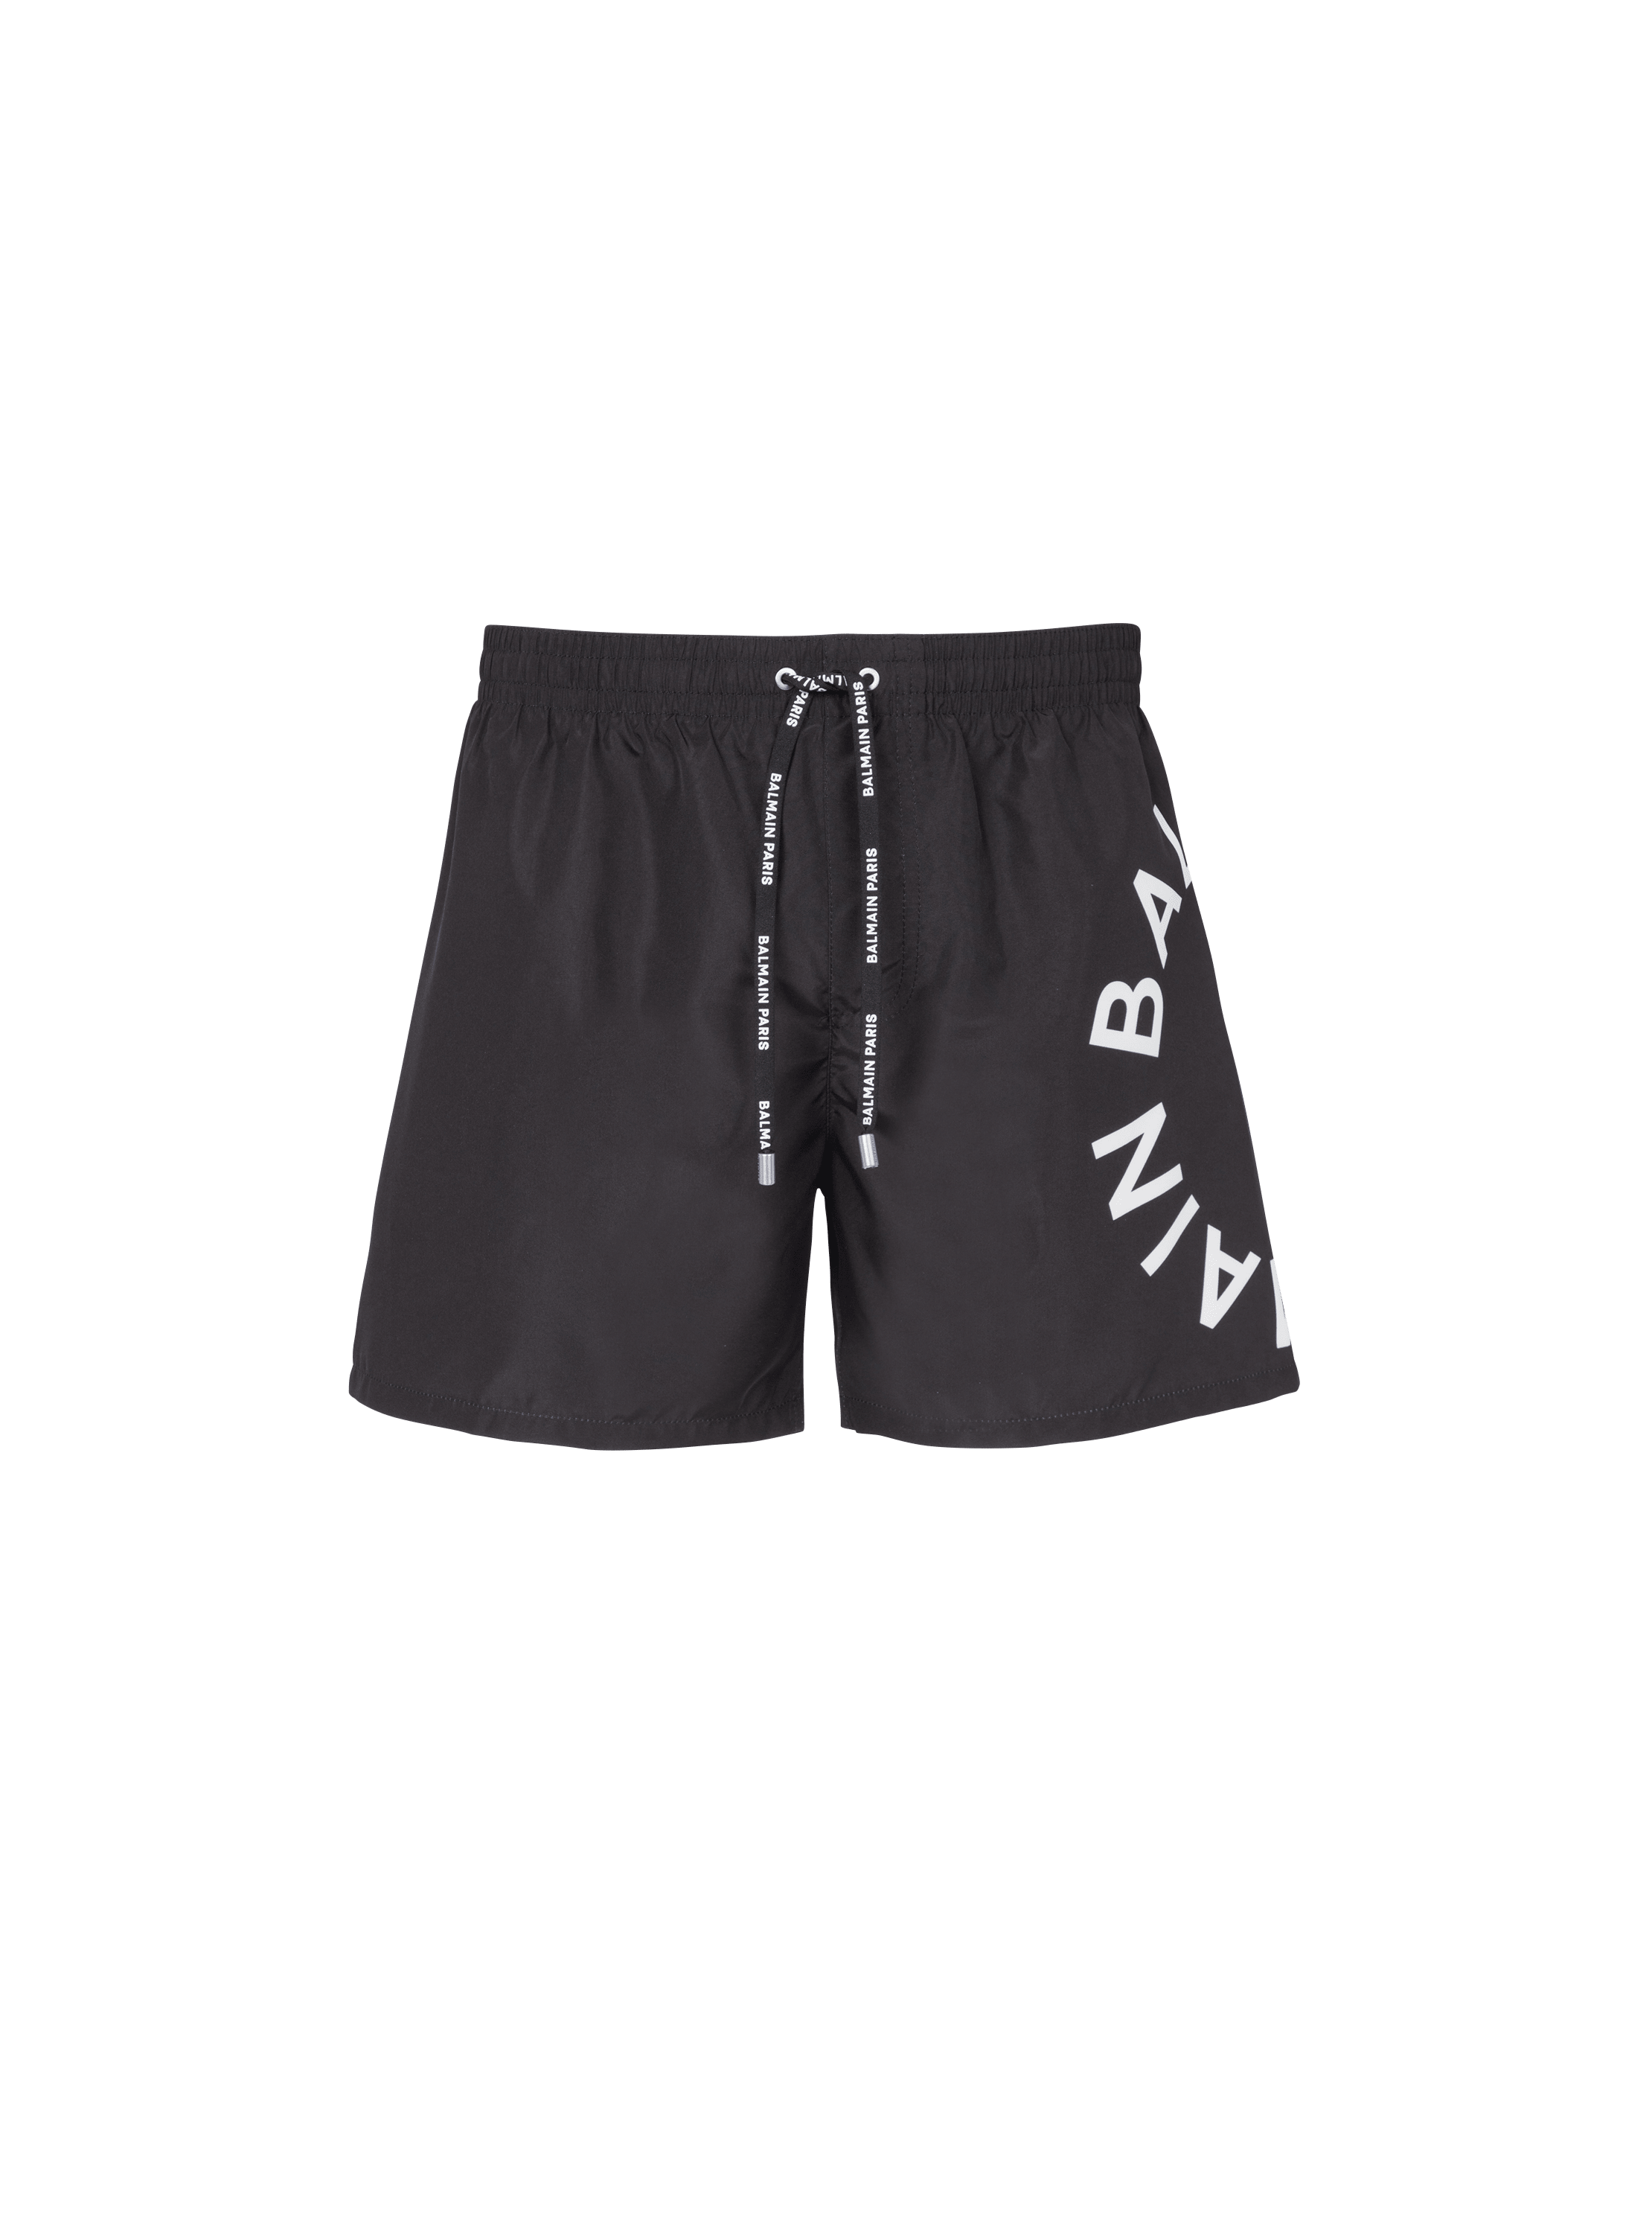 Balmain swim shorts, black, hi-res